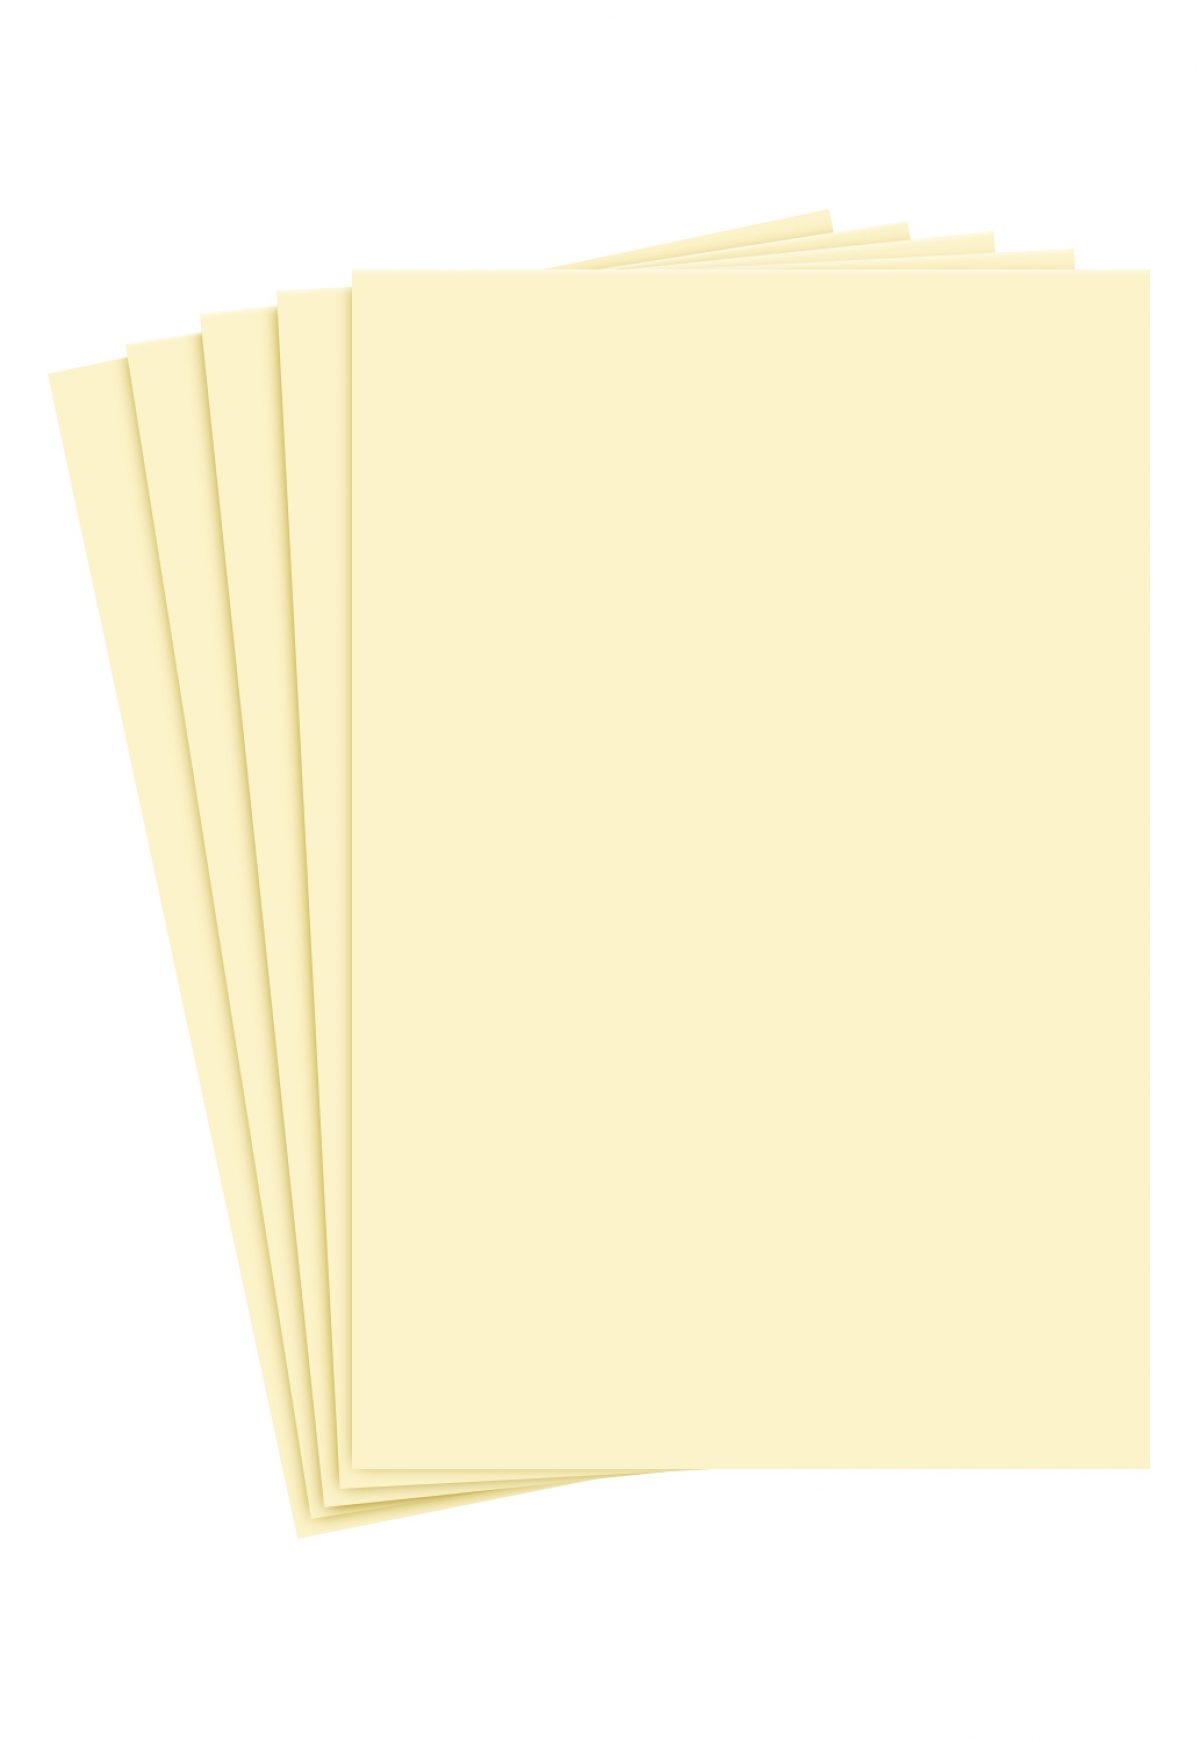 8.5 x 5.5 Paper (Half Letter Size)